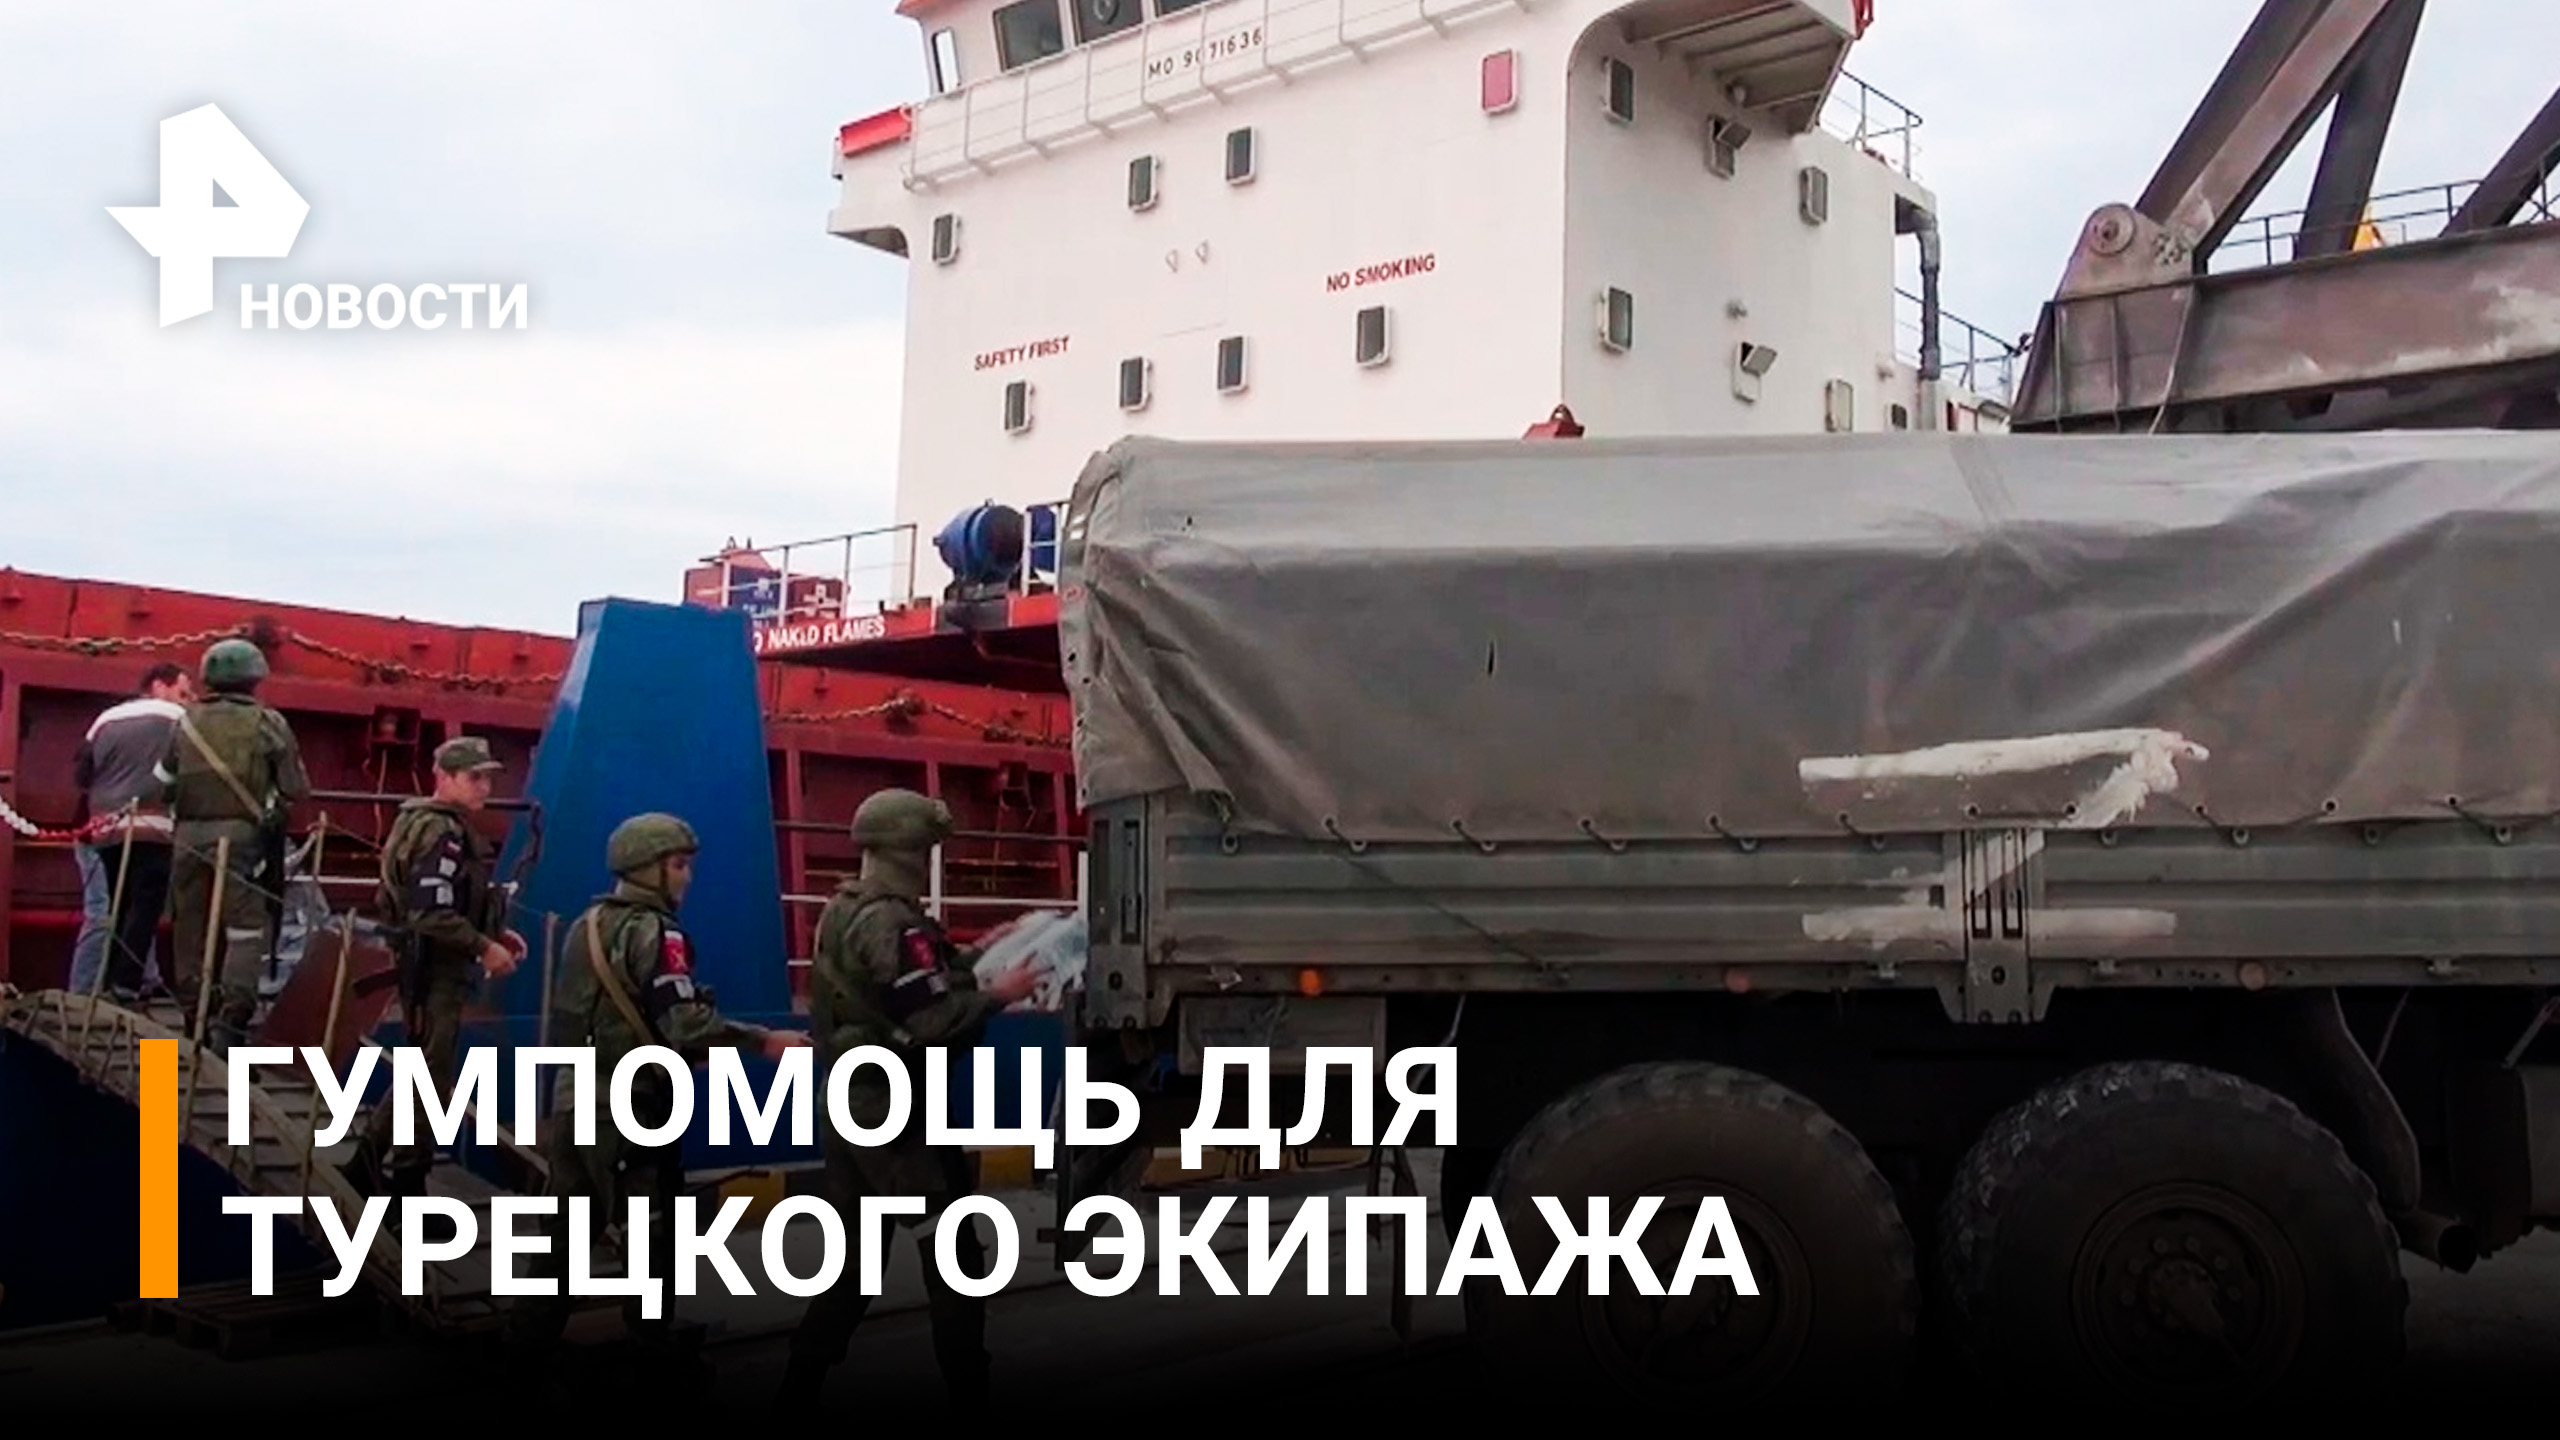 Российские военные доставили гумпомощь турецкому экипажу в Херсон / РЕН Новости